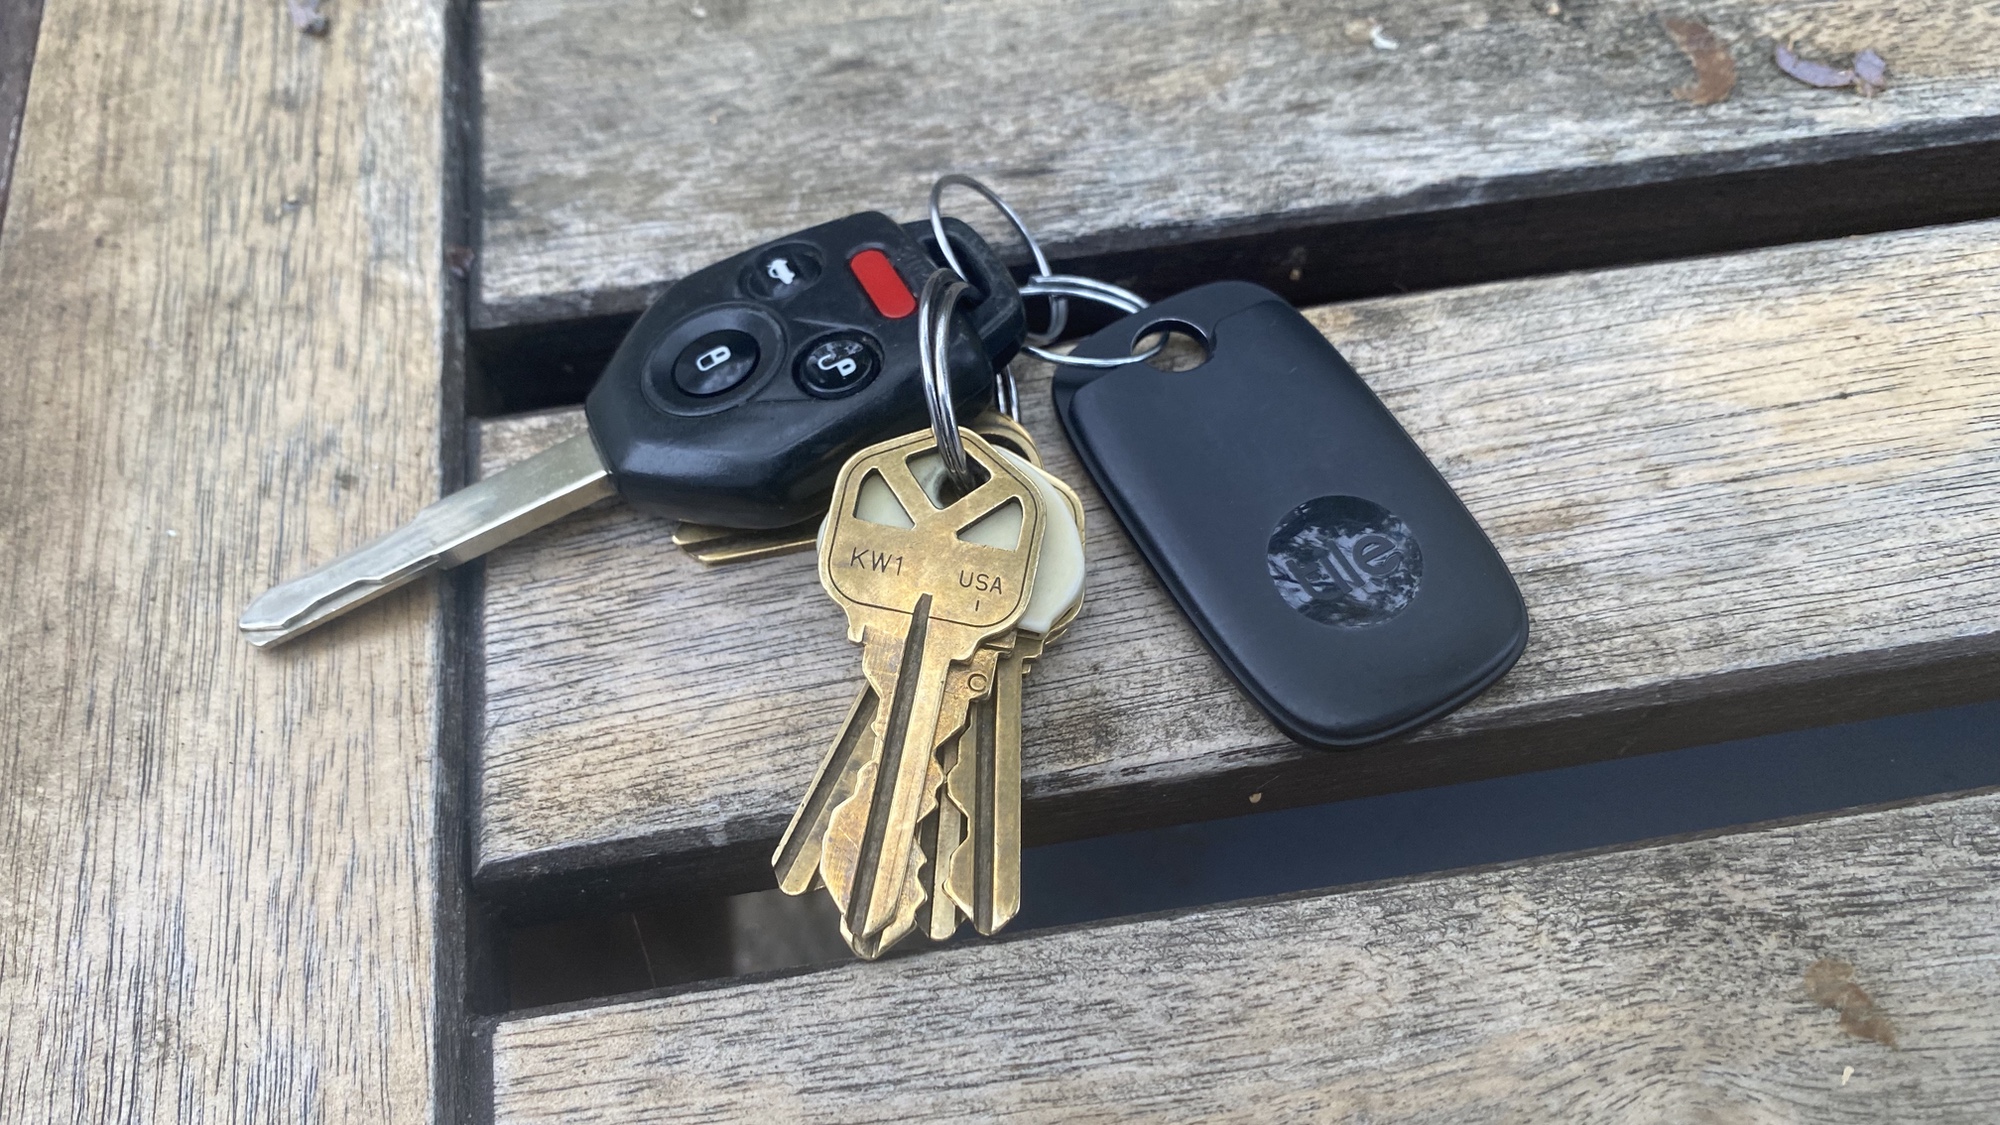 Tile Pro 2022 with keys is the best key finder we've tested